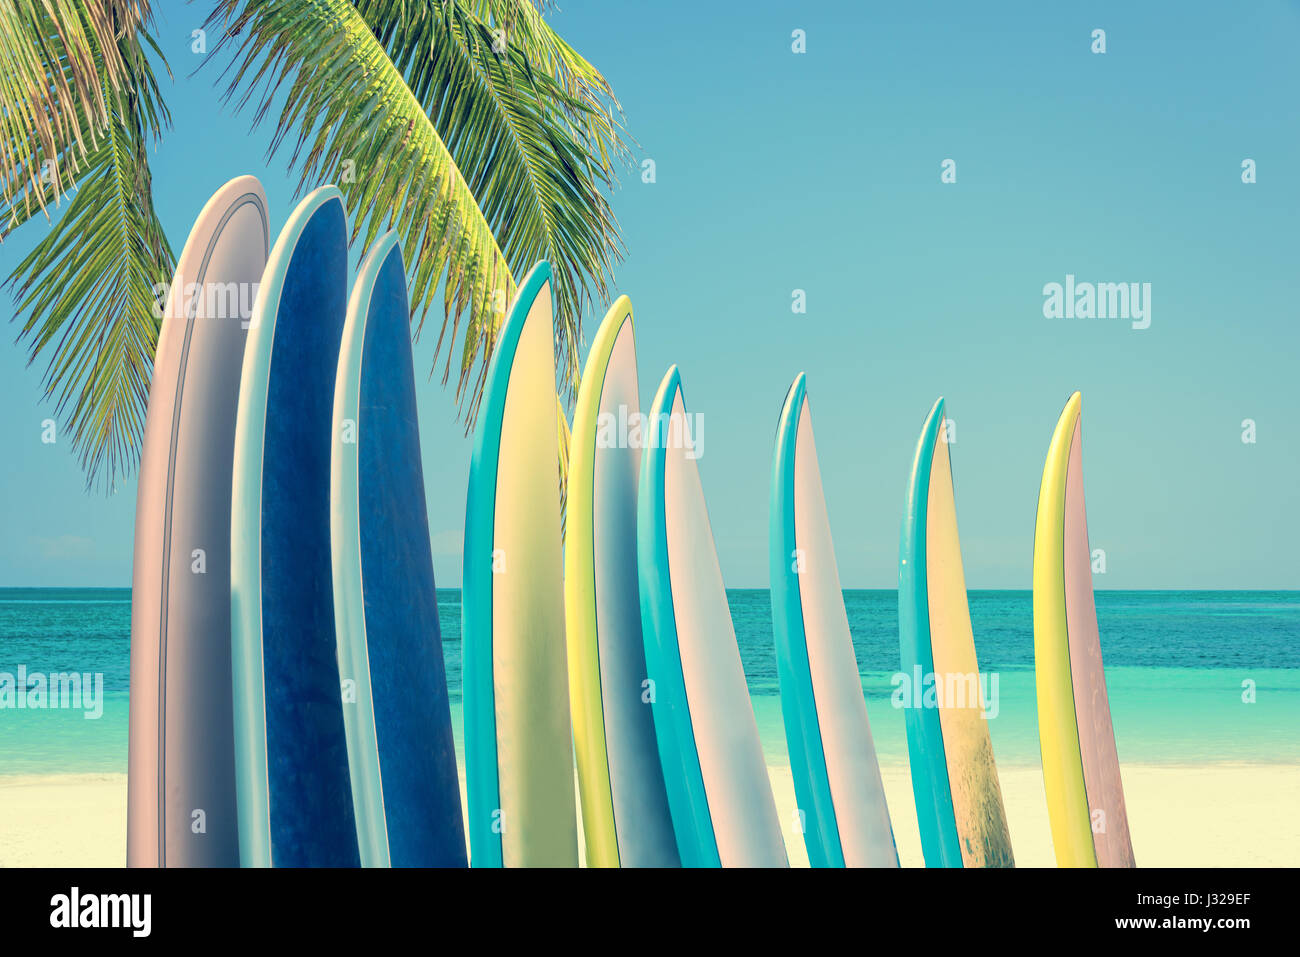 Pile de planches en couleurs sur une plage tropicale à l'océan avec palmier, filtre vintage retro Banque D'Images